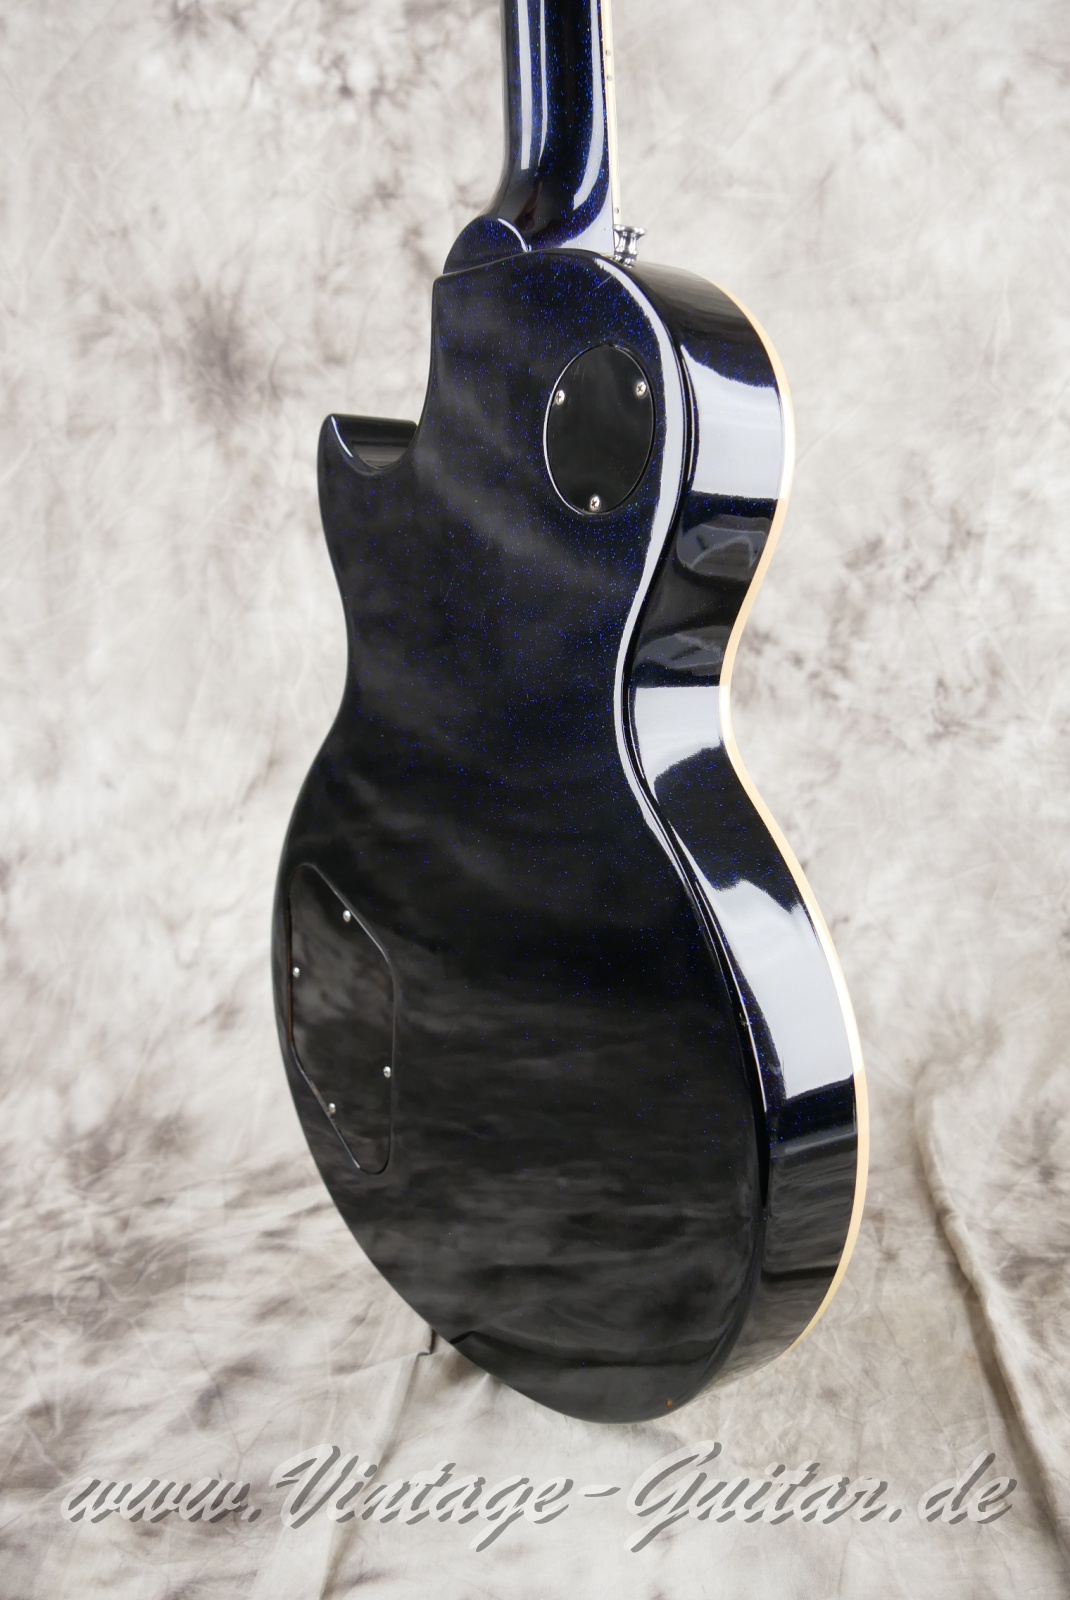 Gibson_Les Paul_Standard_Custom_Shop_edition_dark_blue_sparkle_1993-012.JPG